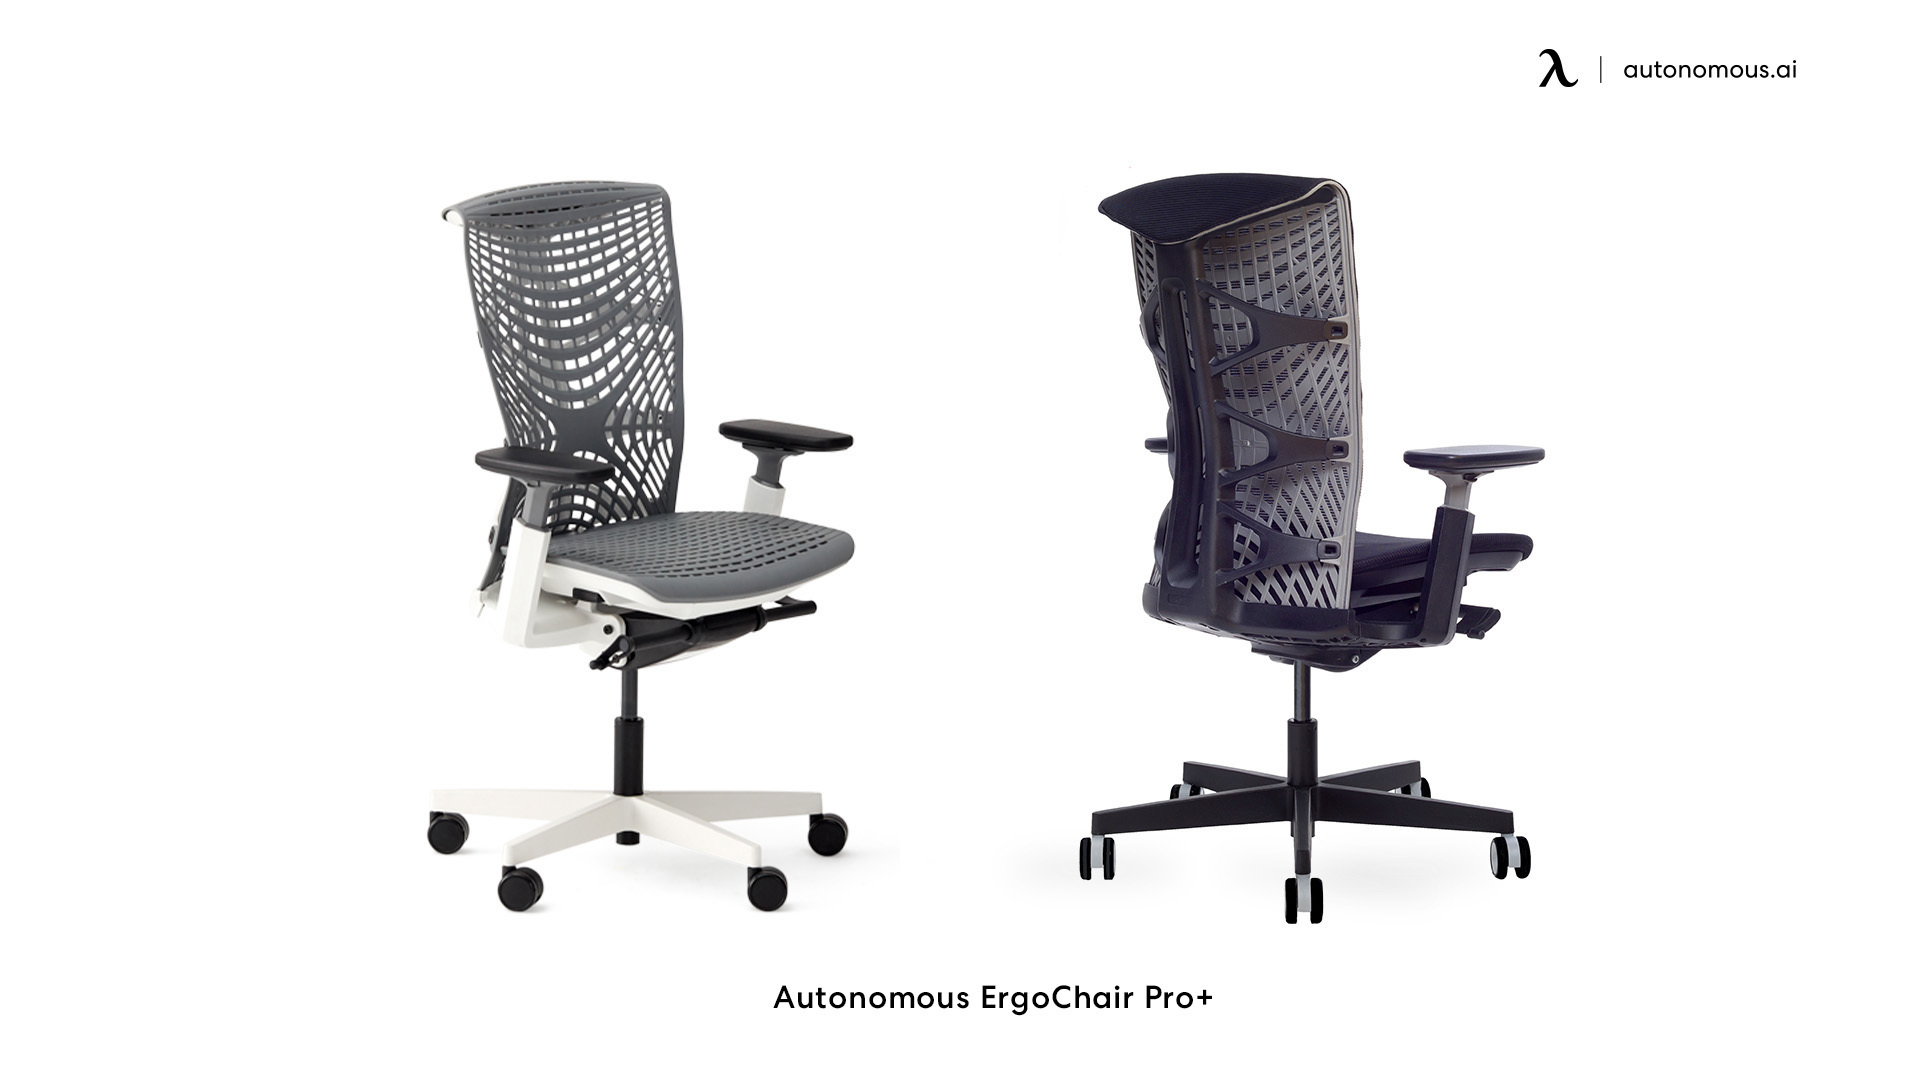 ErgoChair Pro+ mesh office chair